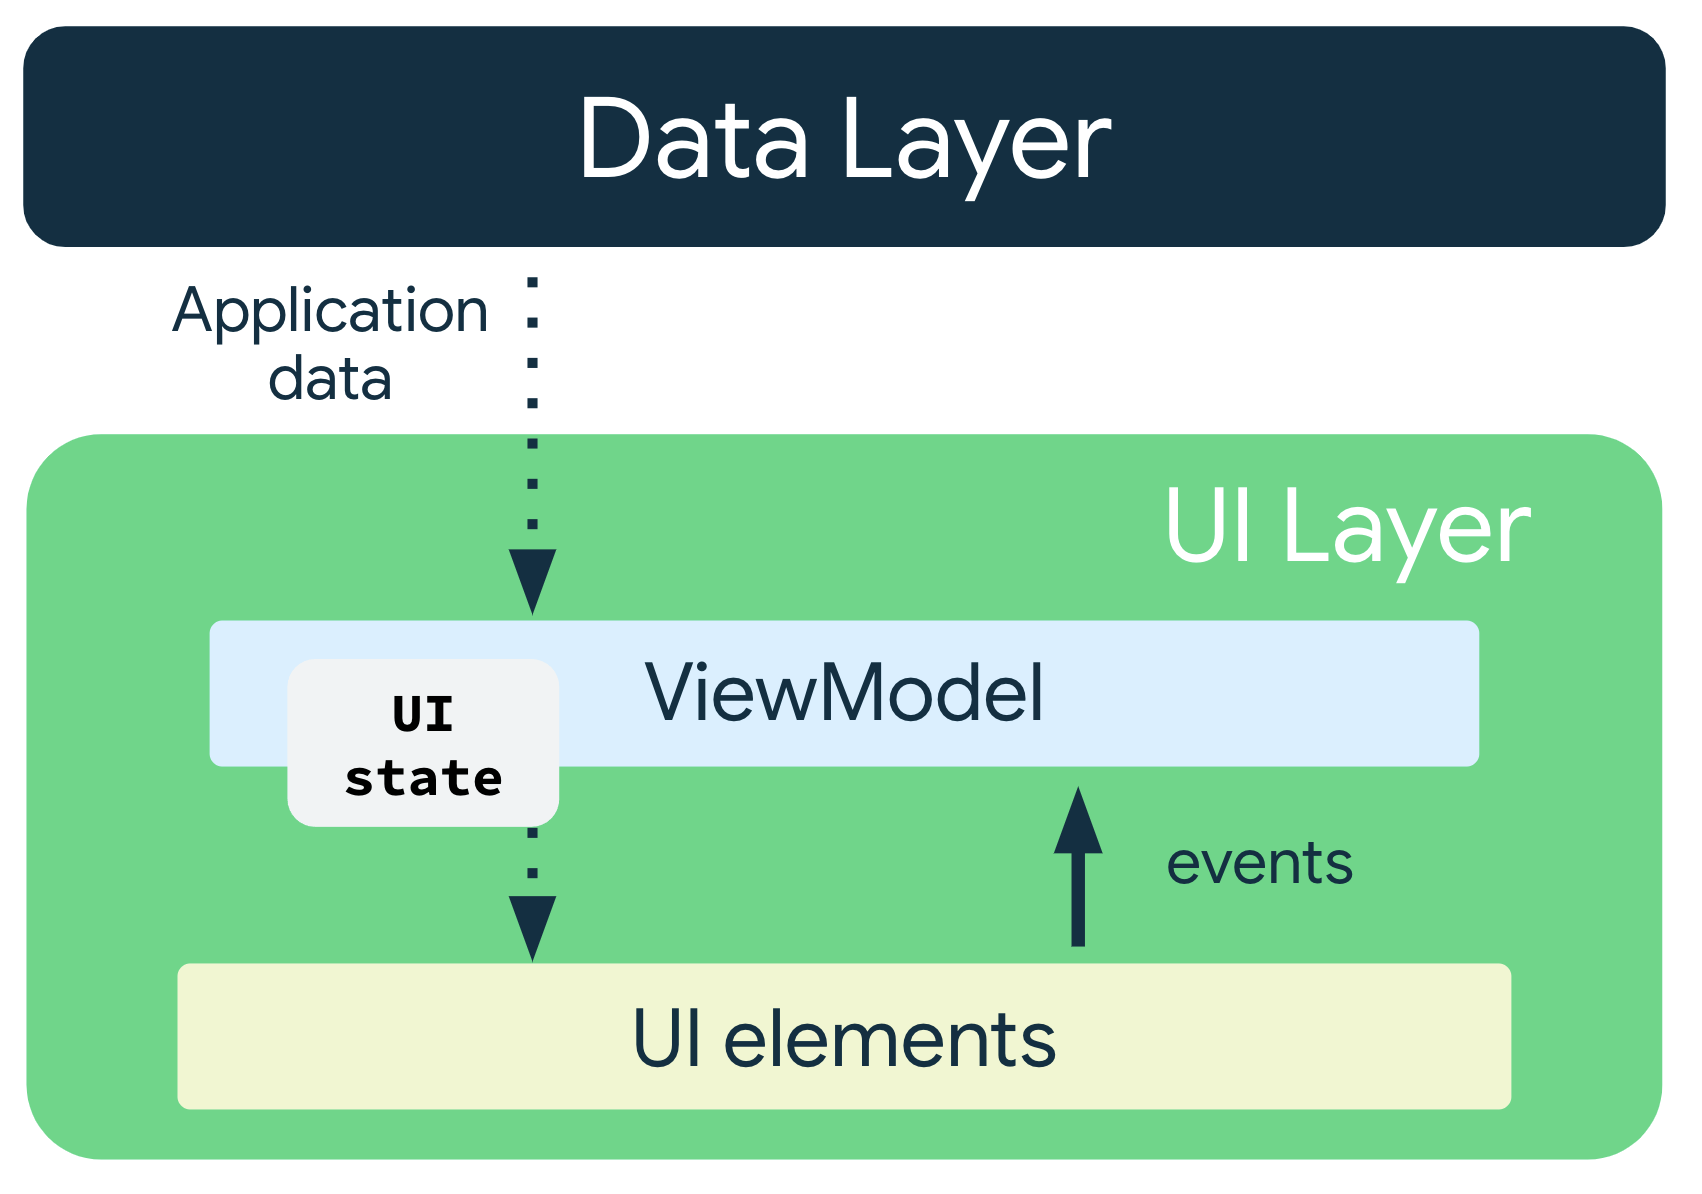 应用数据从数据层流向 ViewModel。界面状态从 ViewModel 流向界面元素，事件从界面元素流回 ViewModel。